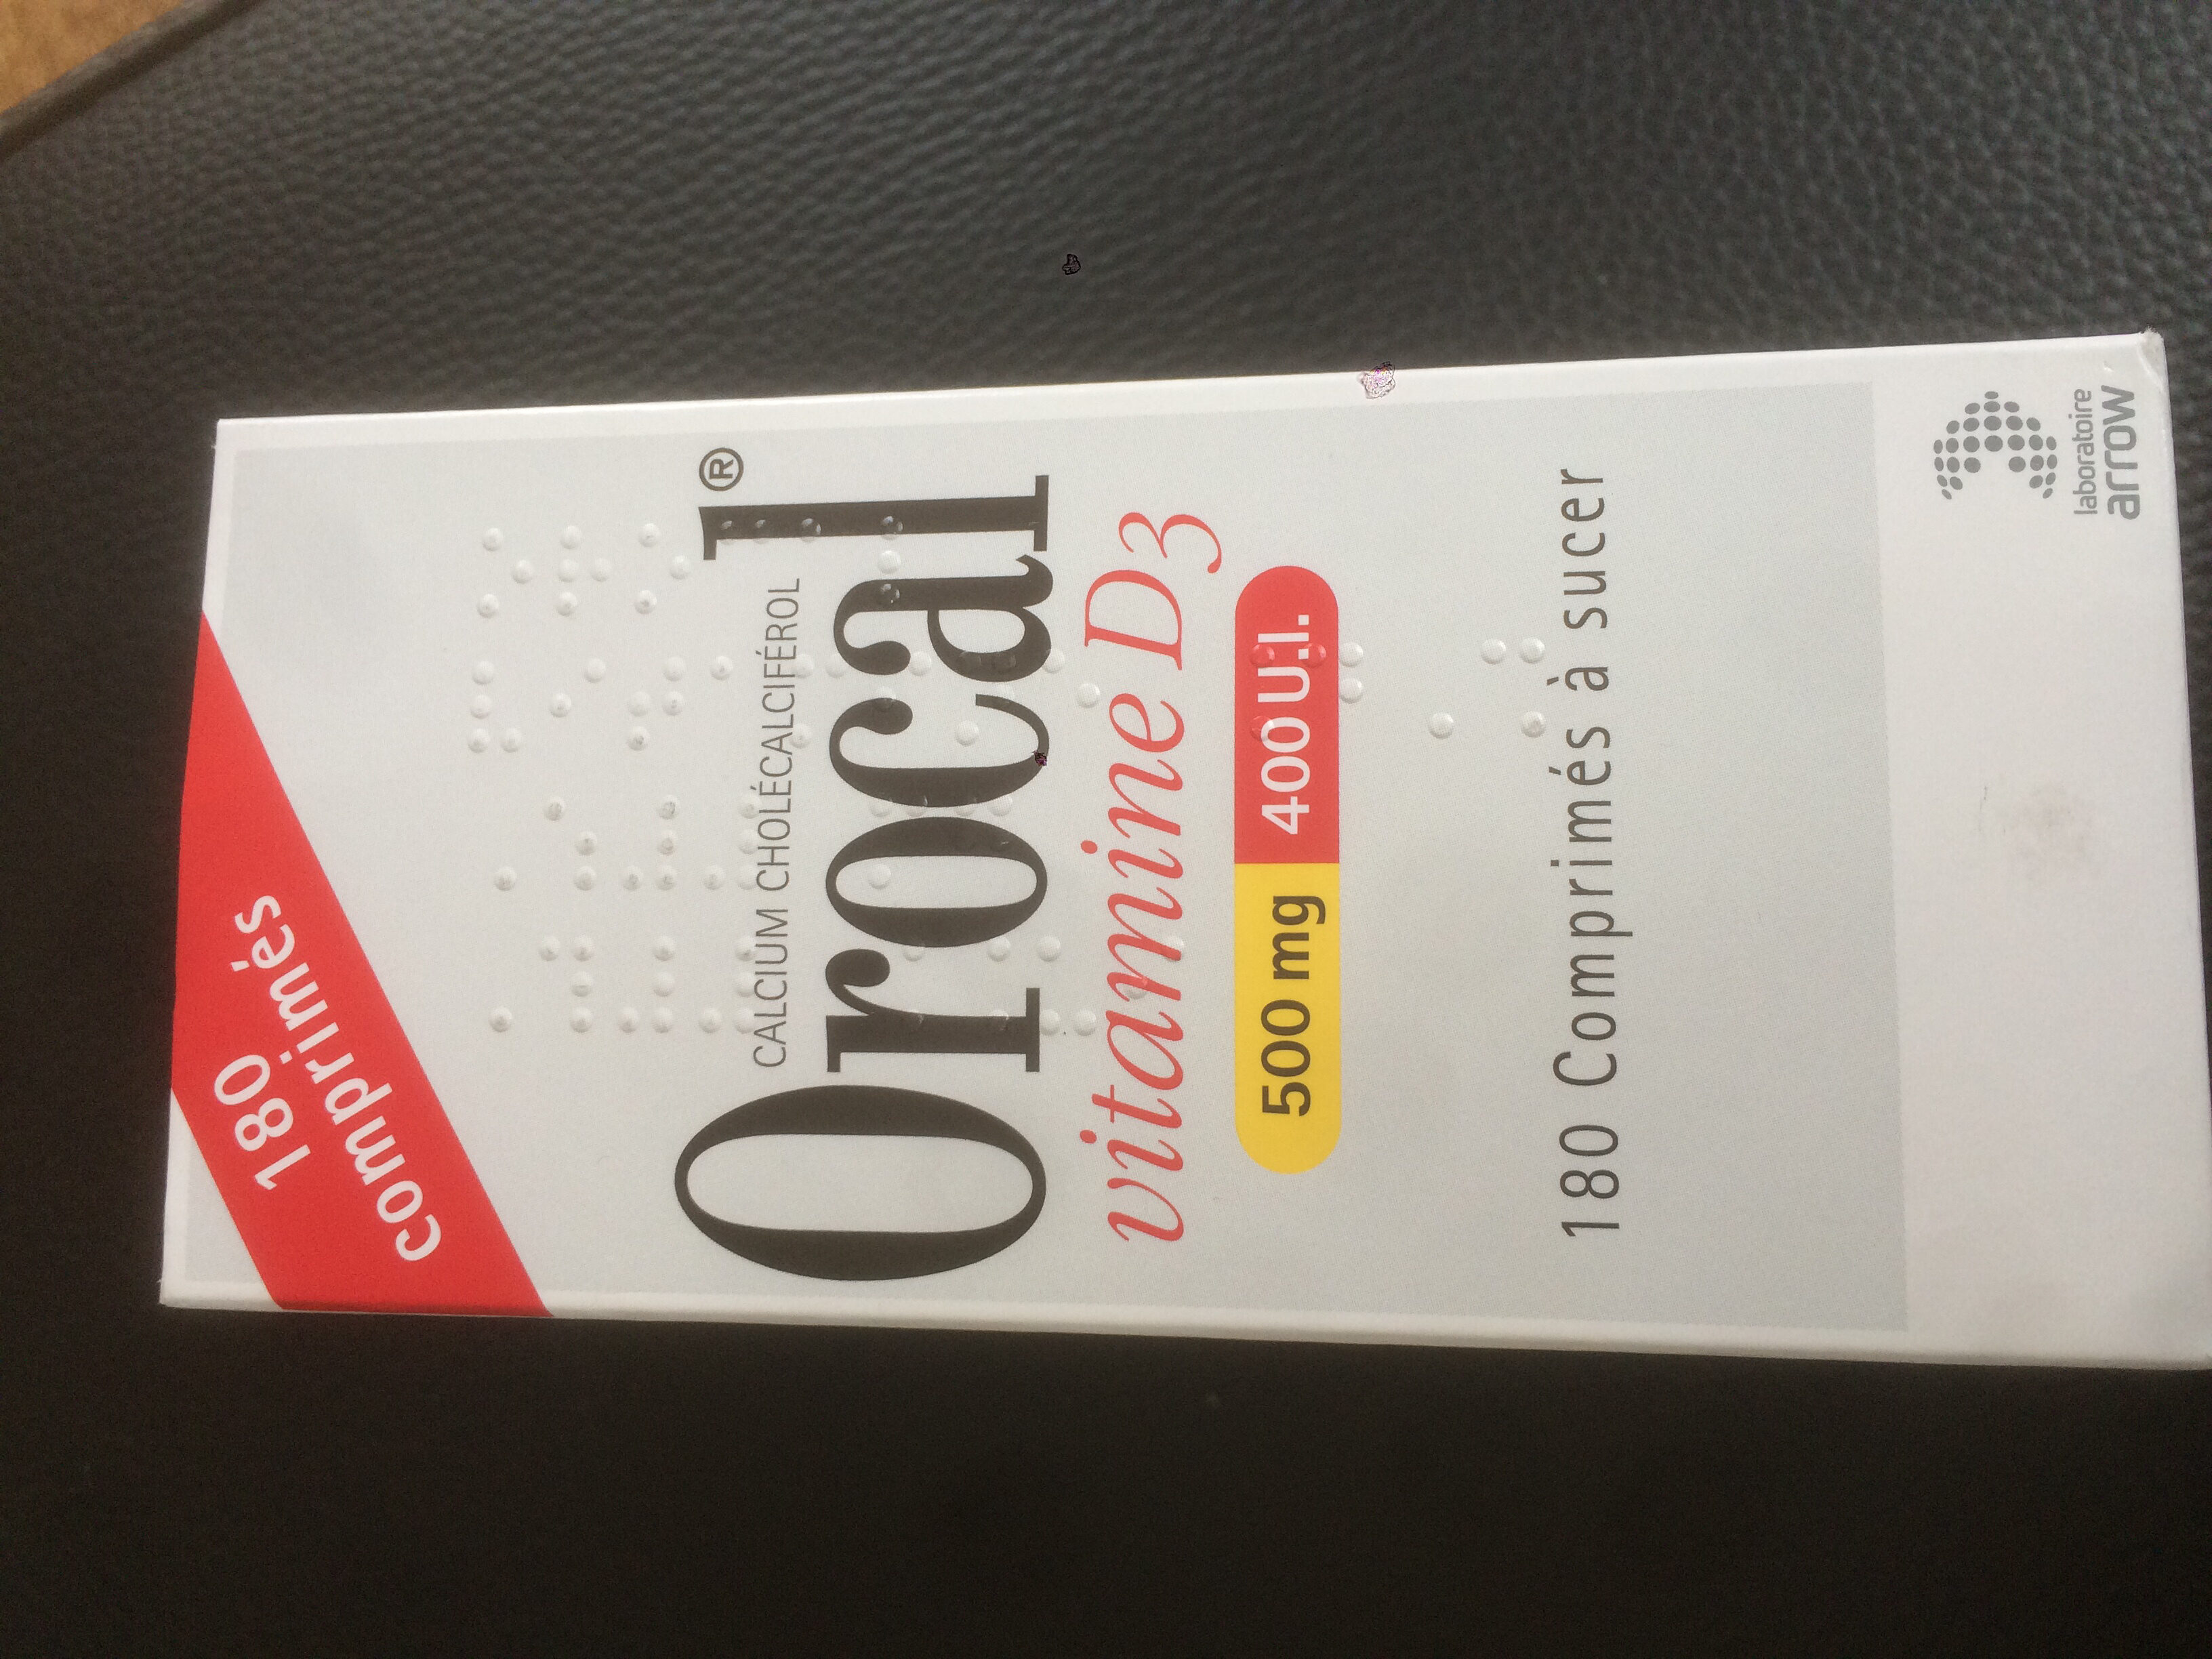 Calcium - vitamine D3 Orocal - Product - fr